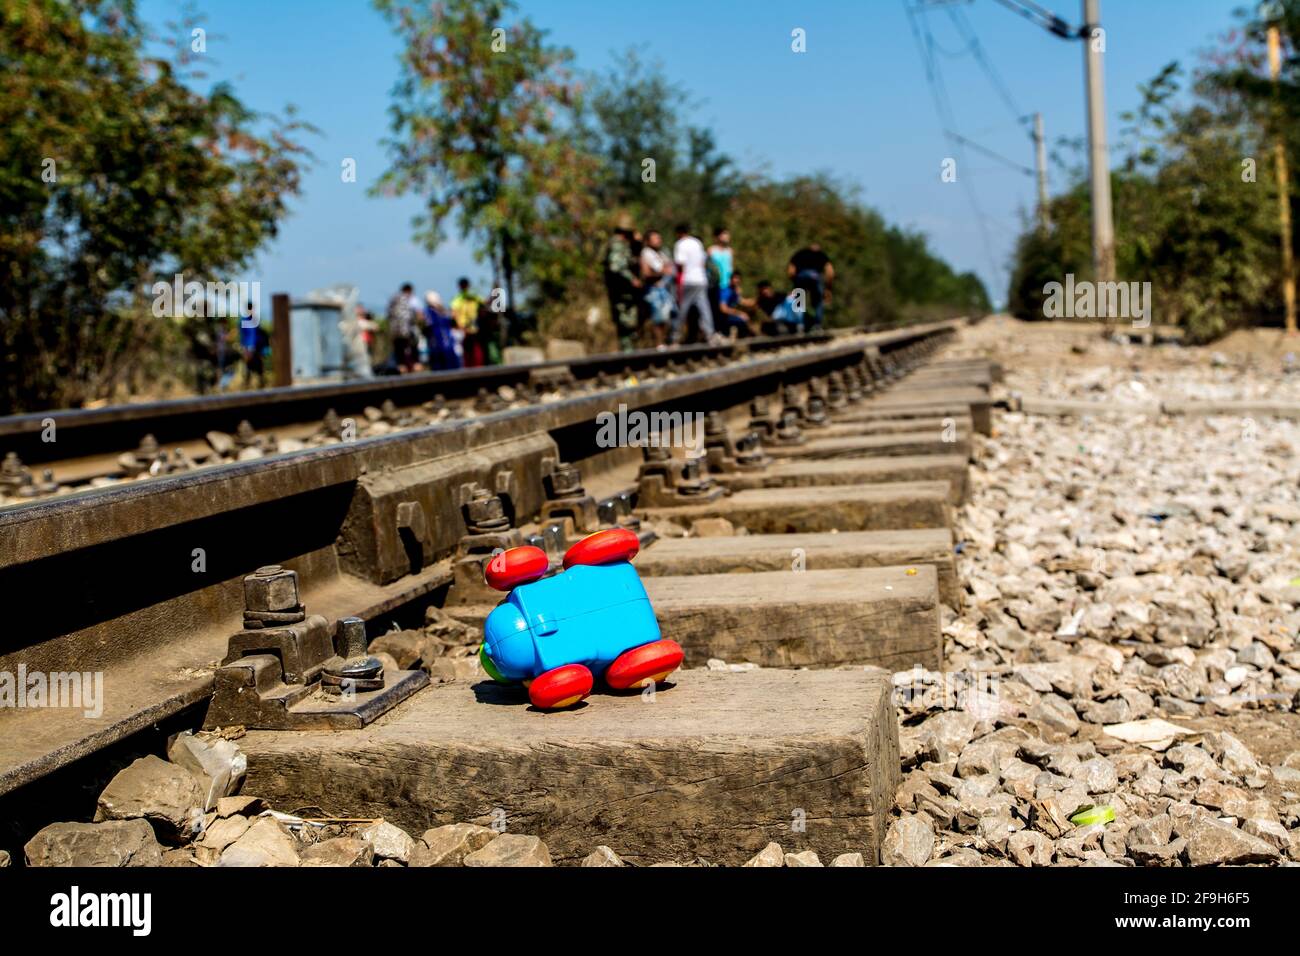 Primer plano del tren de juguete azul de un niño en el lateral de un ferrocarril con pequeñas rocas en el suelo Foto de stock